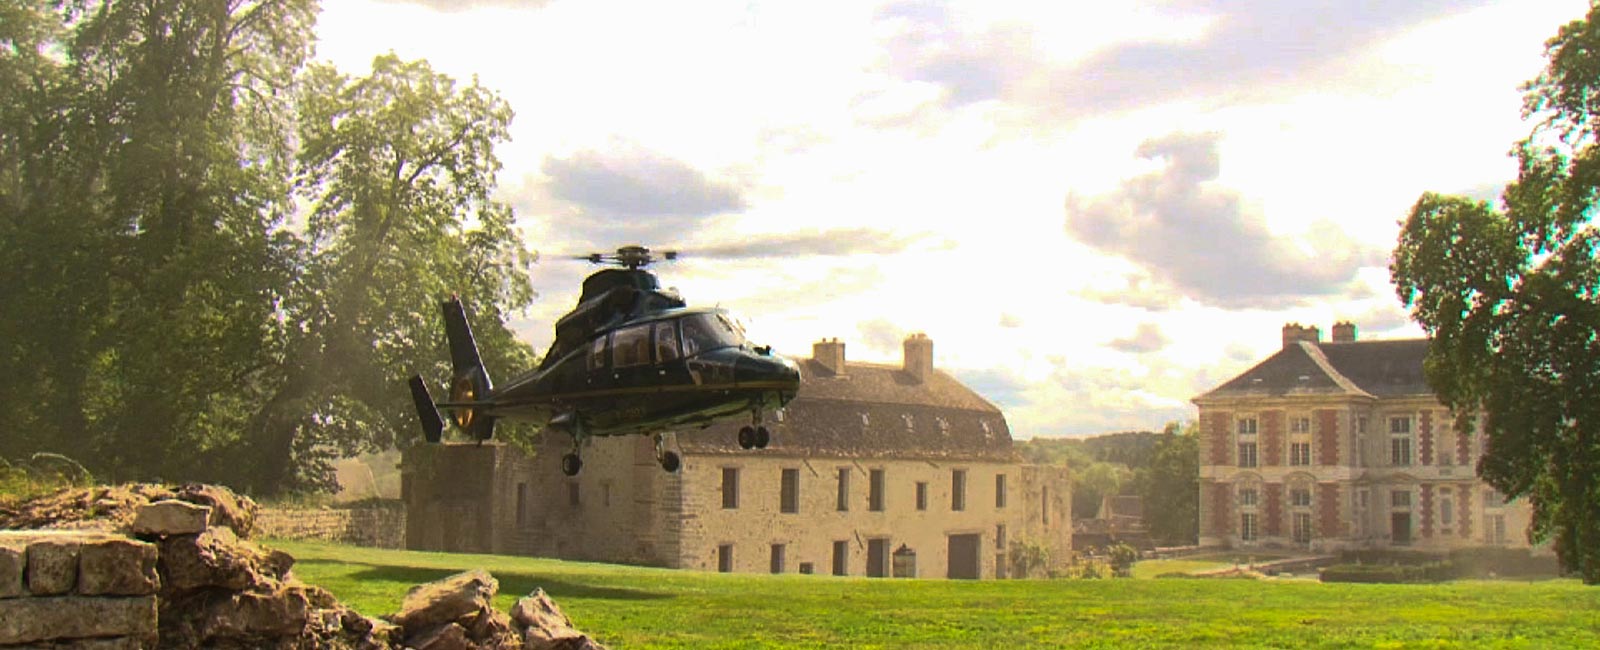 hélicoptère dans le parc du château lors d'un séminaire d'entreprise